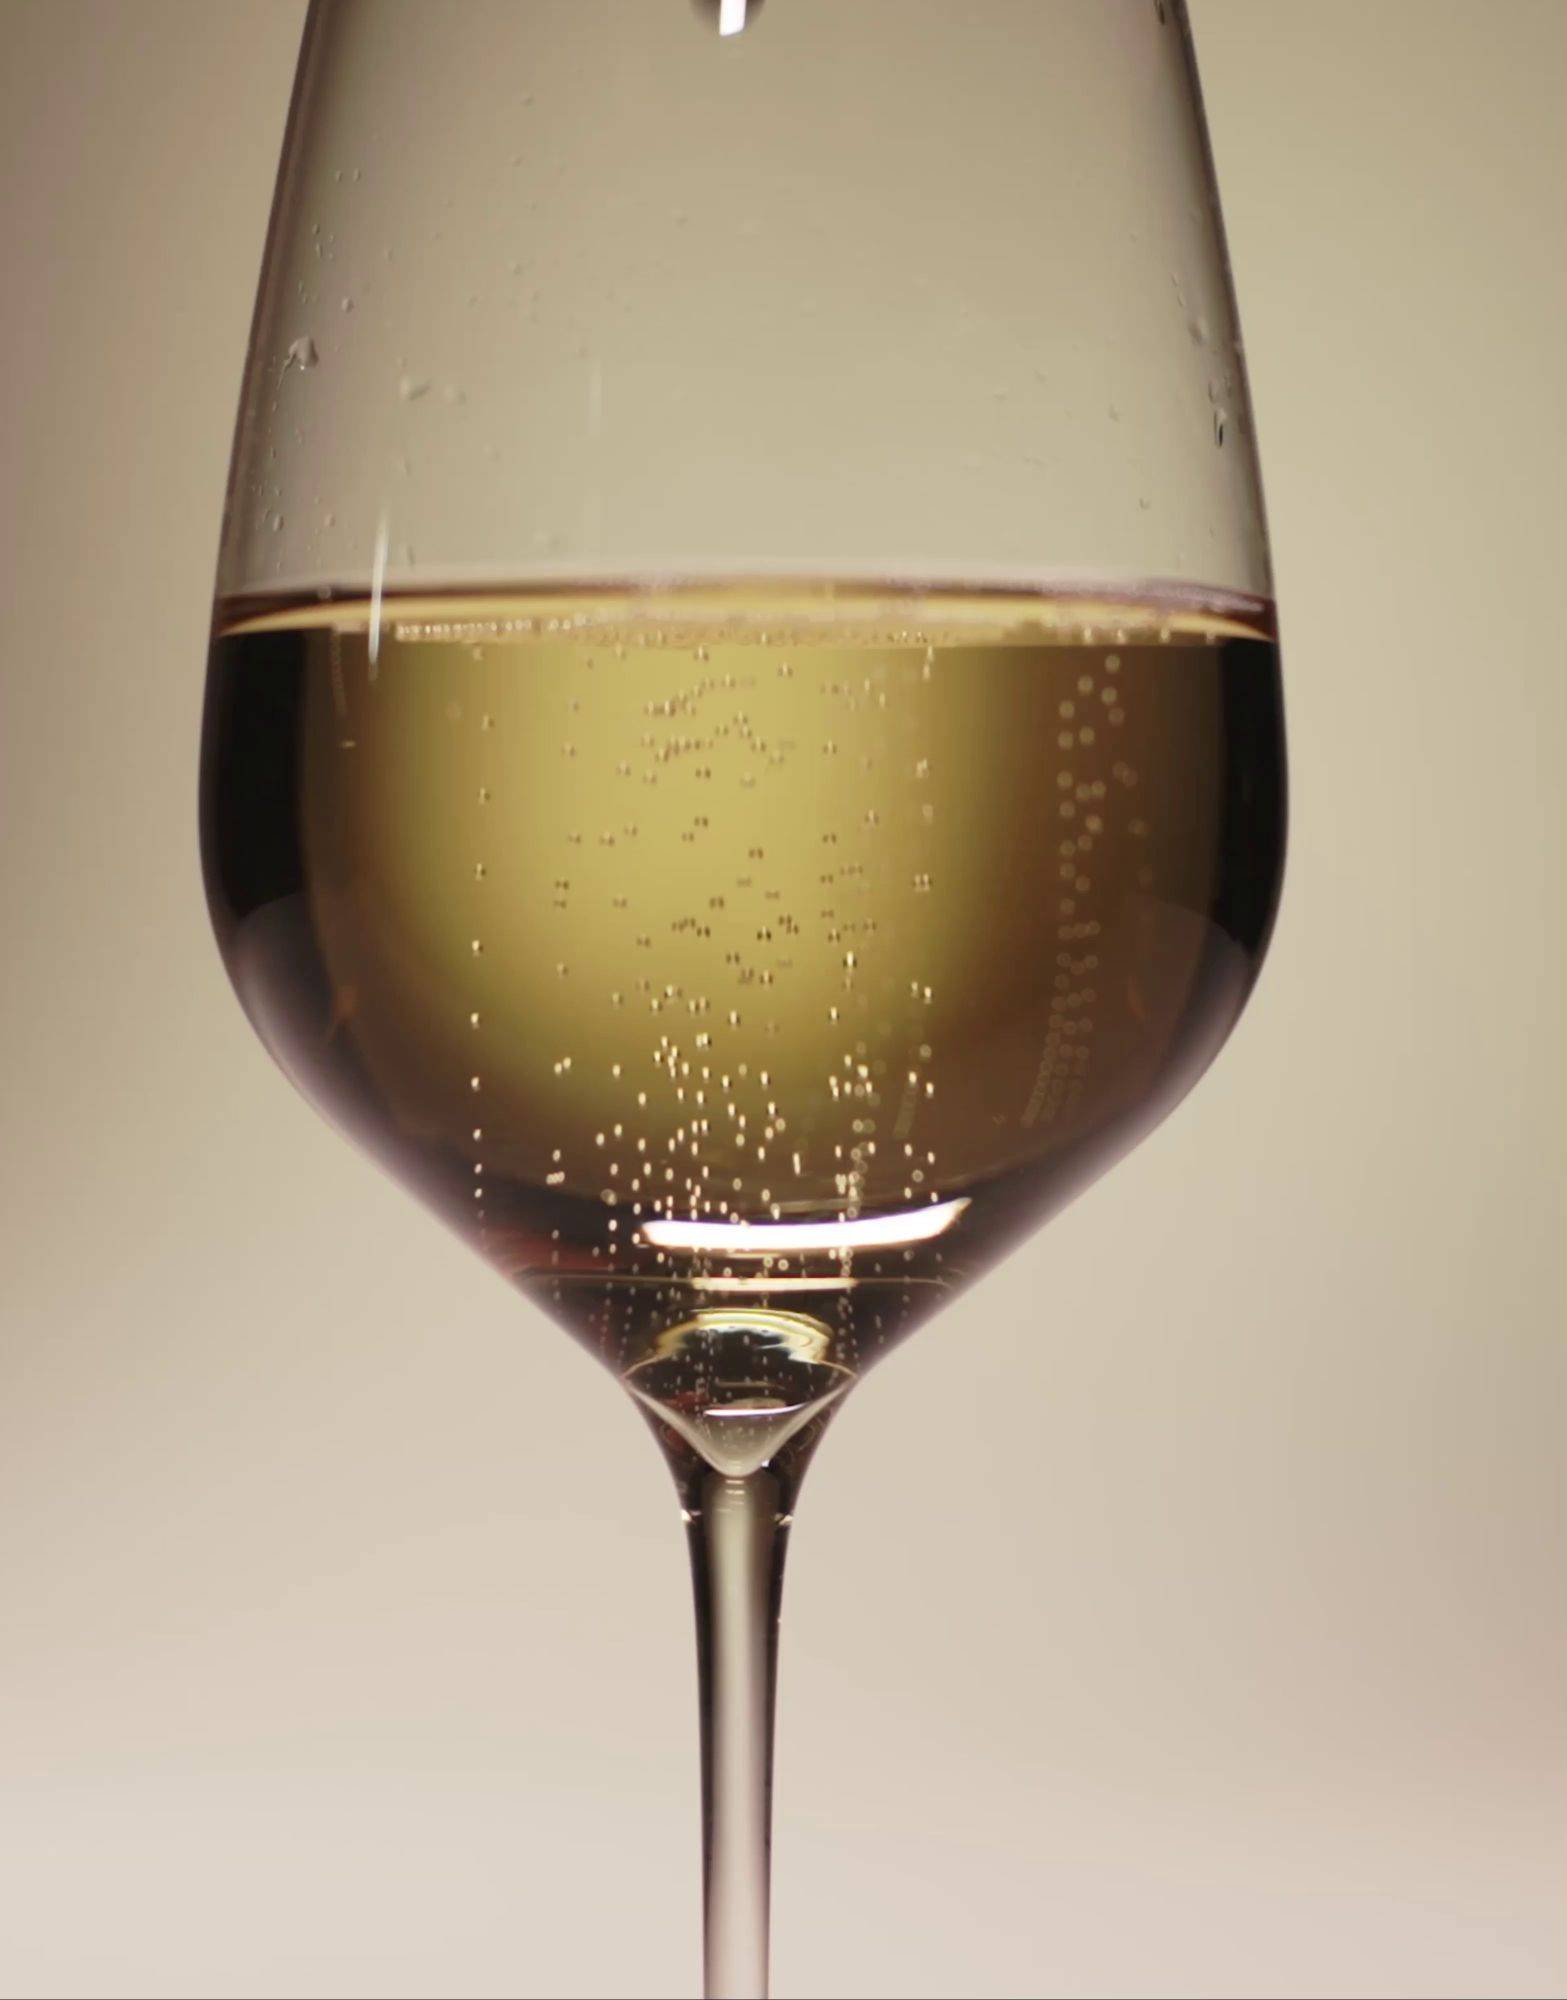 Champagne BARONS de ROTHSCHILD Blanc de Blancs Brut – Cave des Sacres